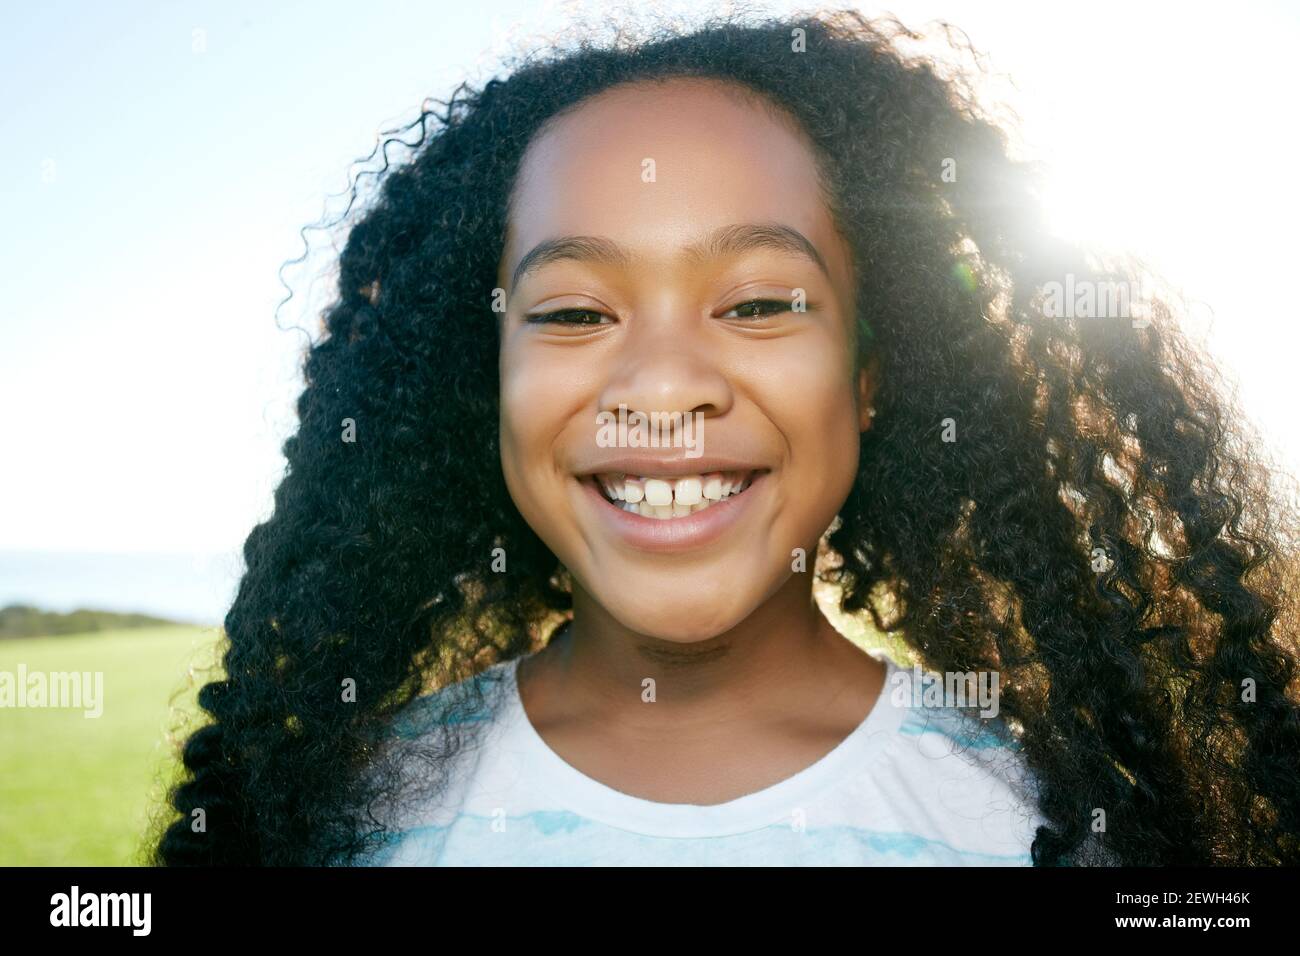 Jeune fille de race mixte avec de longs cheveux bouclés noirs, souriant Banque D'Images